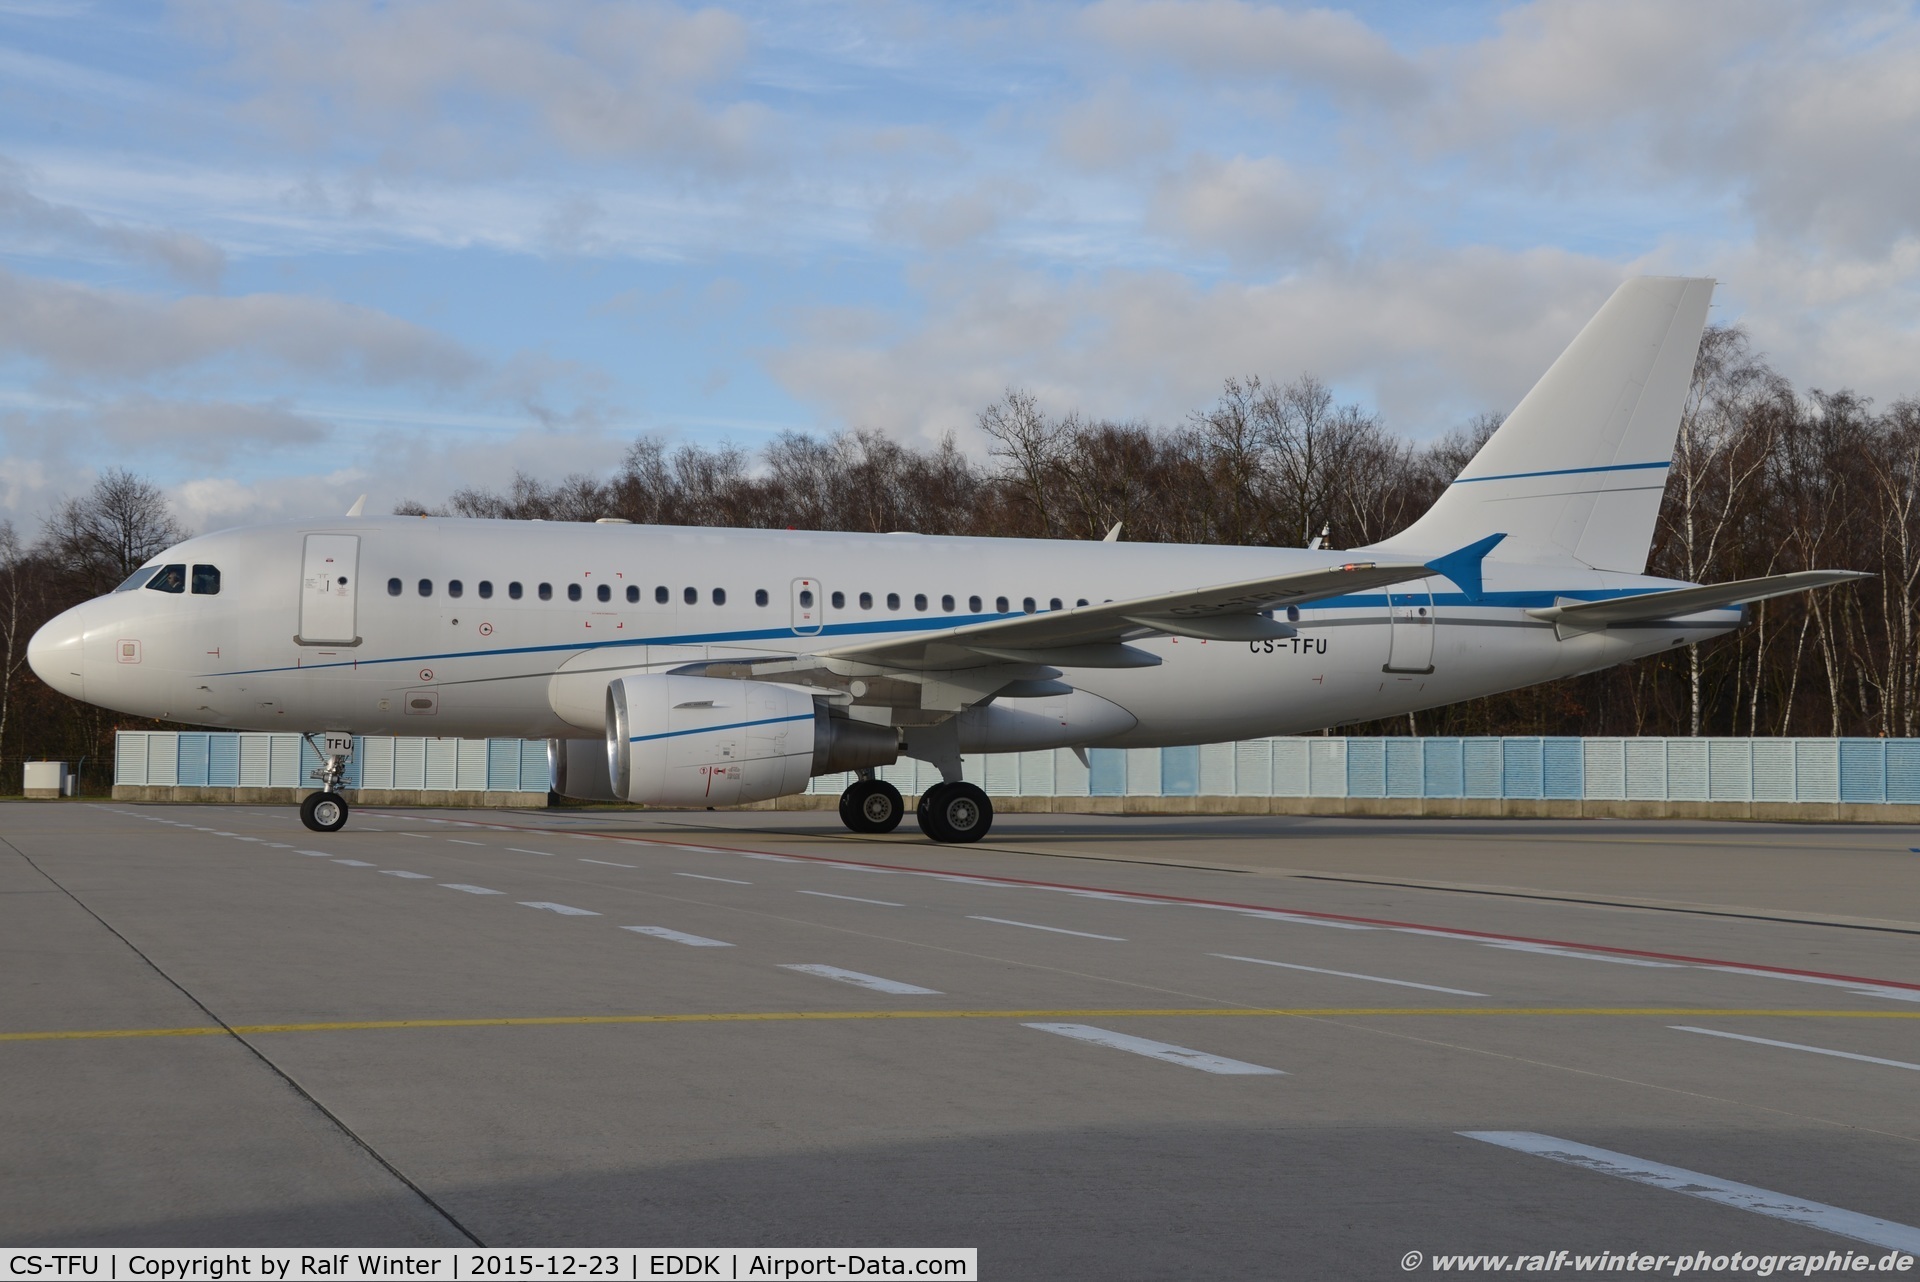 CS-TFU, 2005 Airbus A319-115LR C/N 2440, Airbus A319-115LR - WHT White Airways - 2440 - CSTFU - 23.12.2015 - CGN